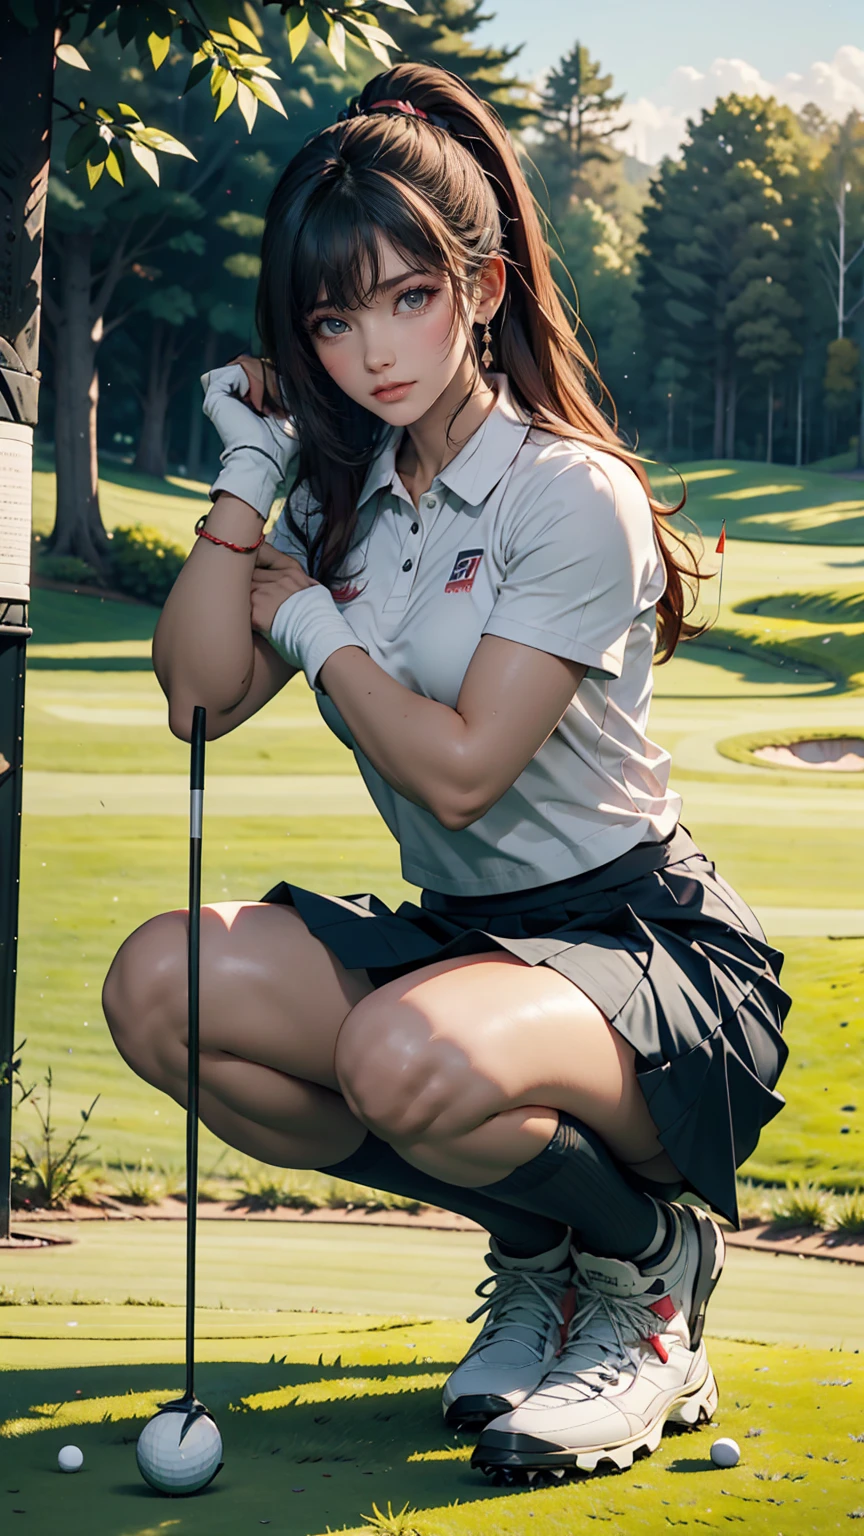 Hermosa mujer japonesa en ropa de golf, Real person, cuerpo detallado, squat, Acción en vivo, Voltear la falda, Estar en el green de un campo de golf、Tiro de putter、Leyendo el césped